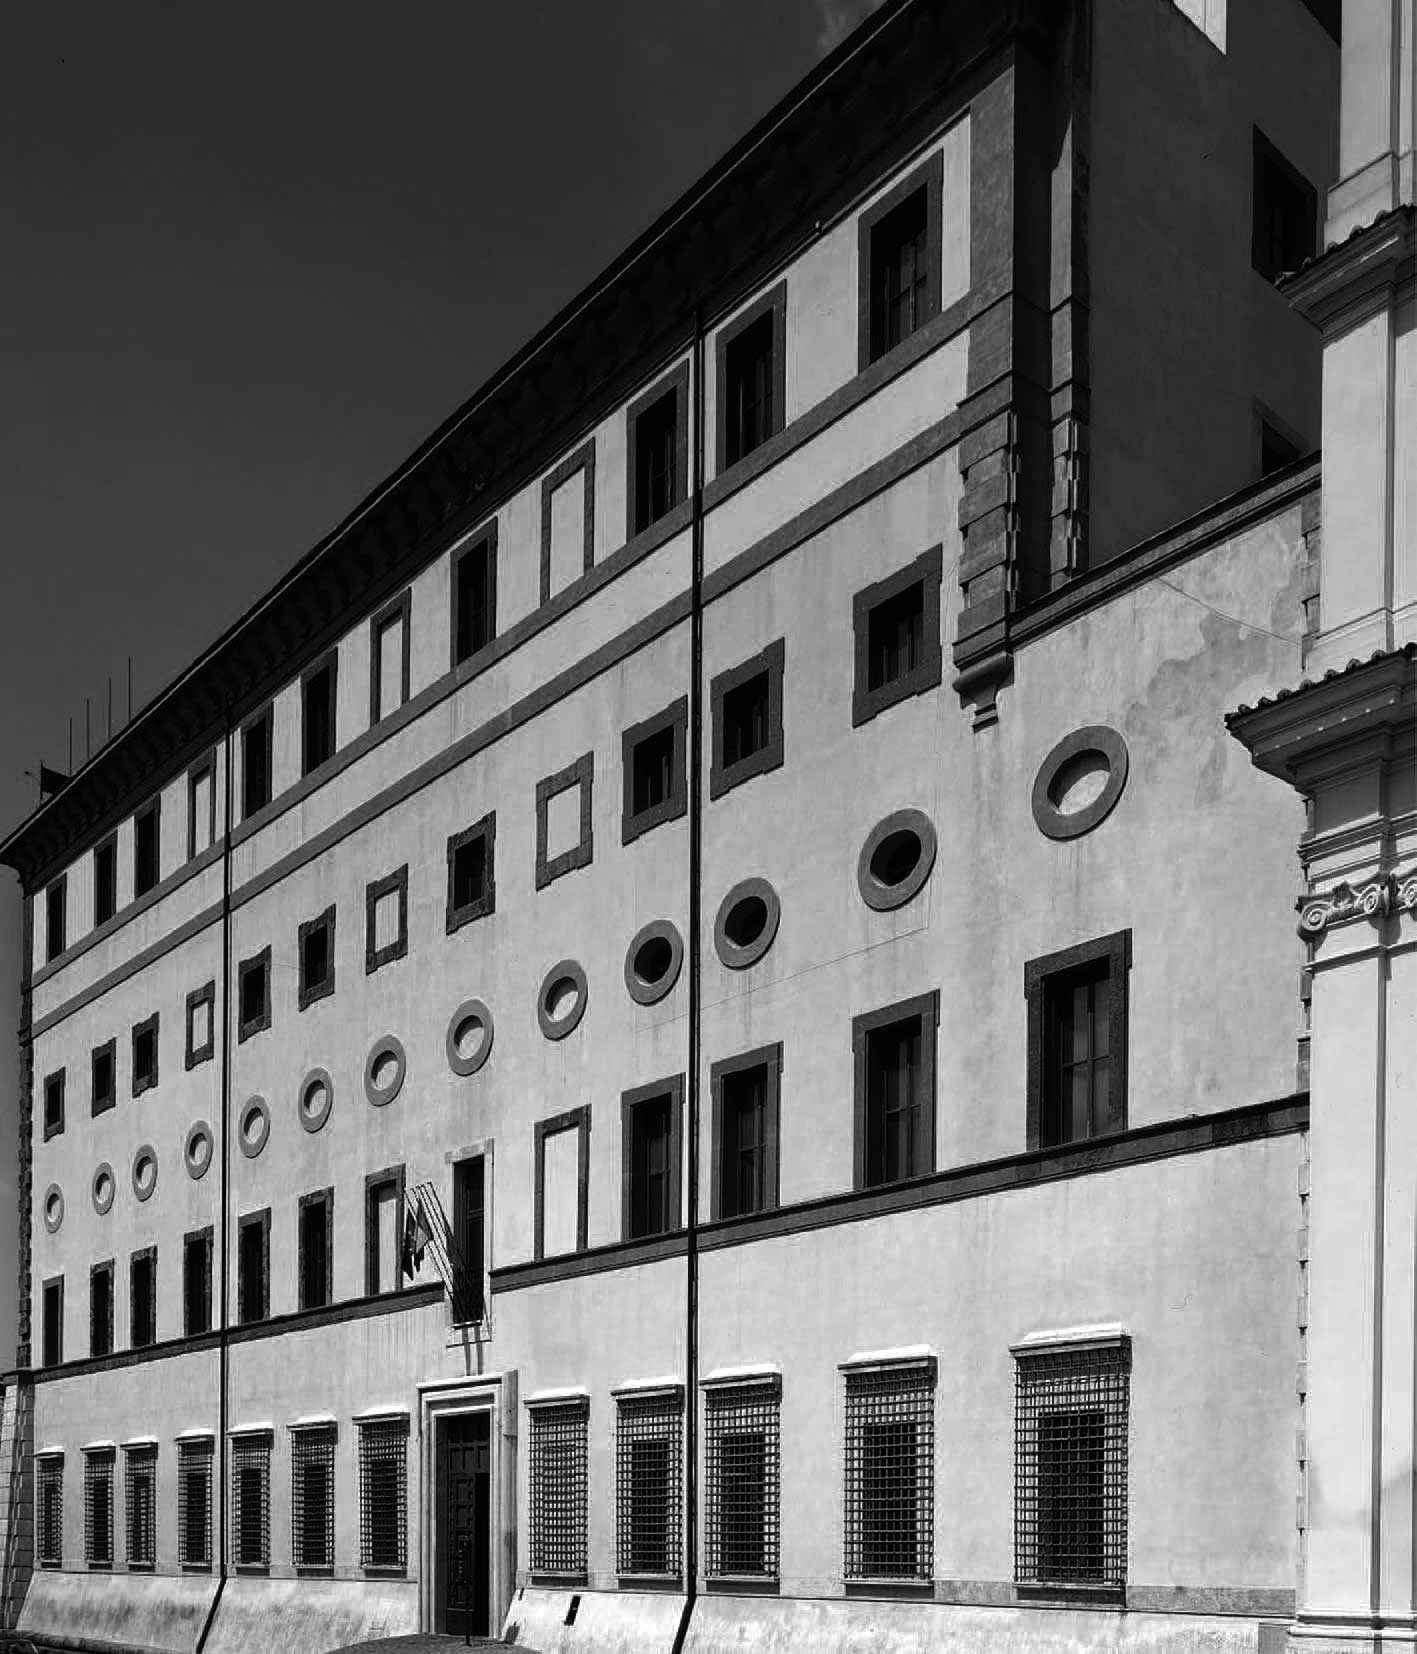 5 - Restauro di Palazzo Doria Pamphilj a Valmontone (RM); con S. Benedetti, C. Gavarini e G. Miarelli Mariani - Vista esterna